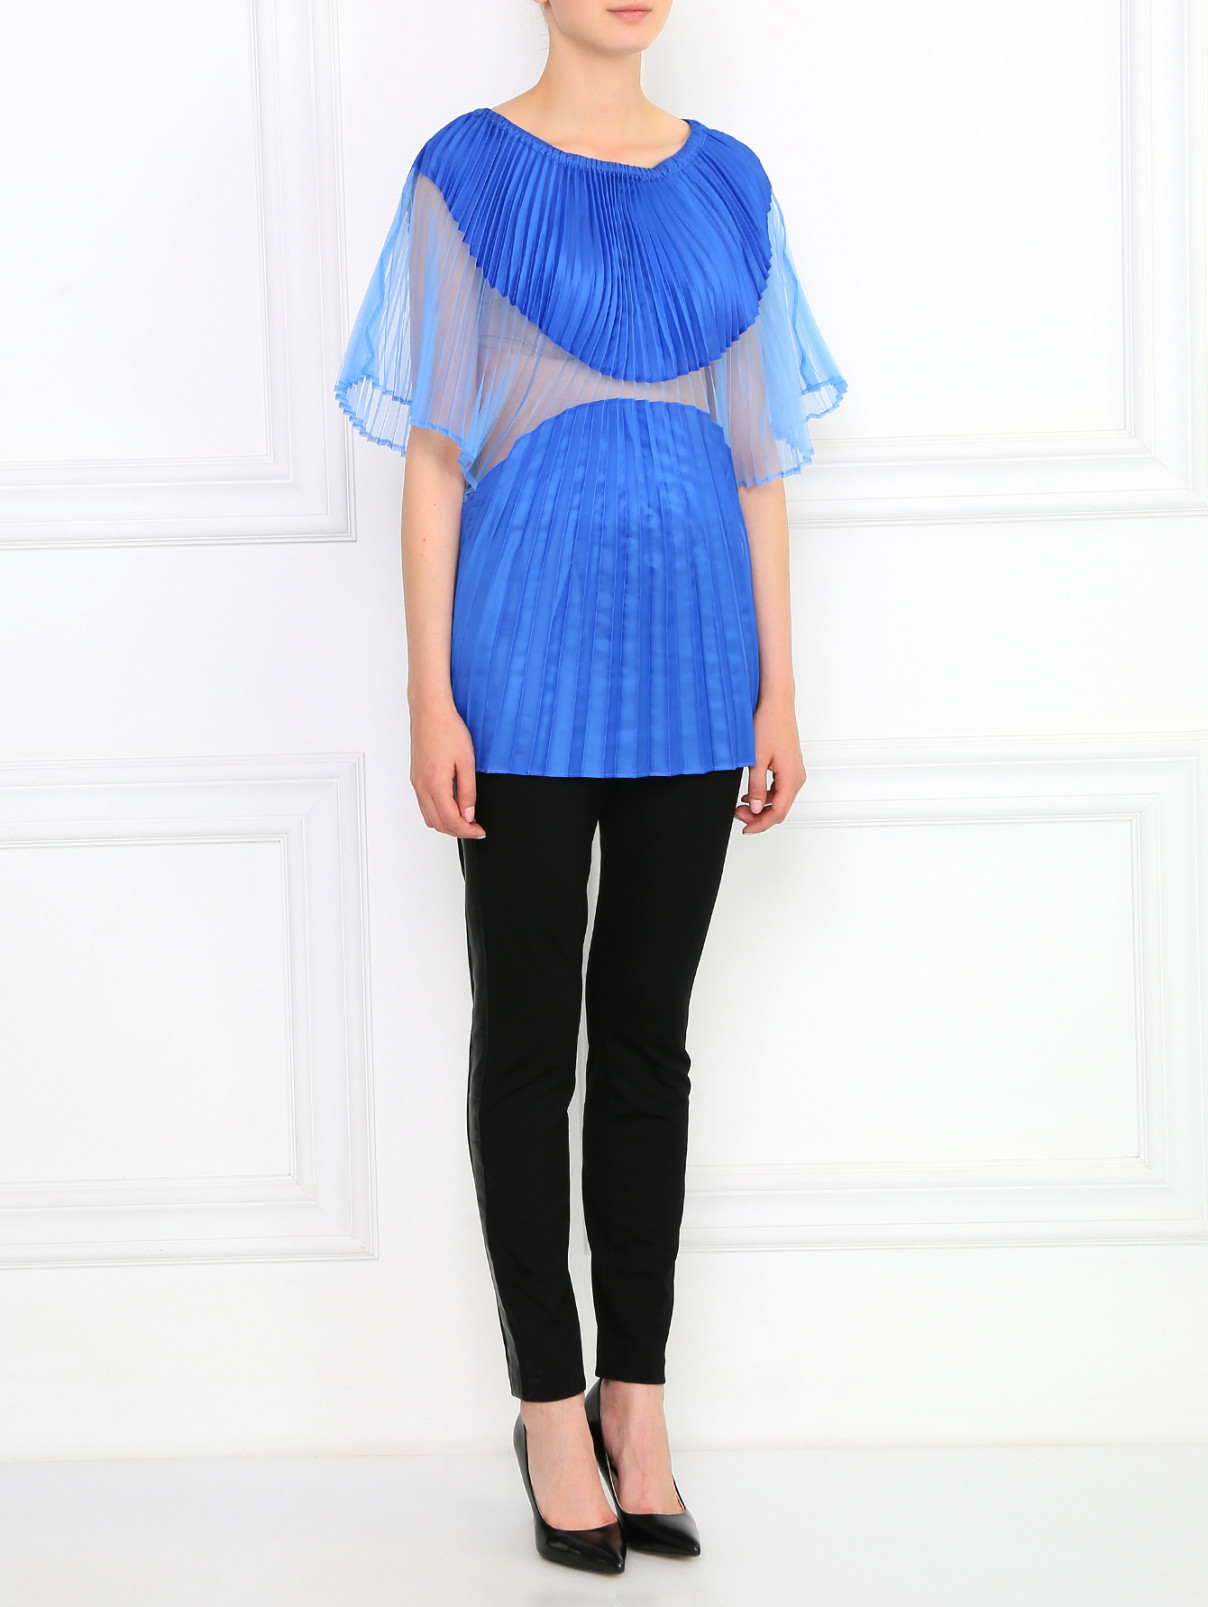 Плиссированная блуза Jean Paul Gaultier  –  Модель Общий вид  – Цвет:  Синий